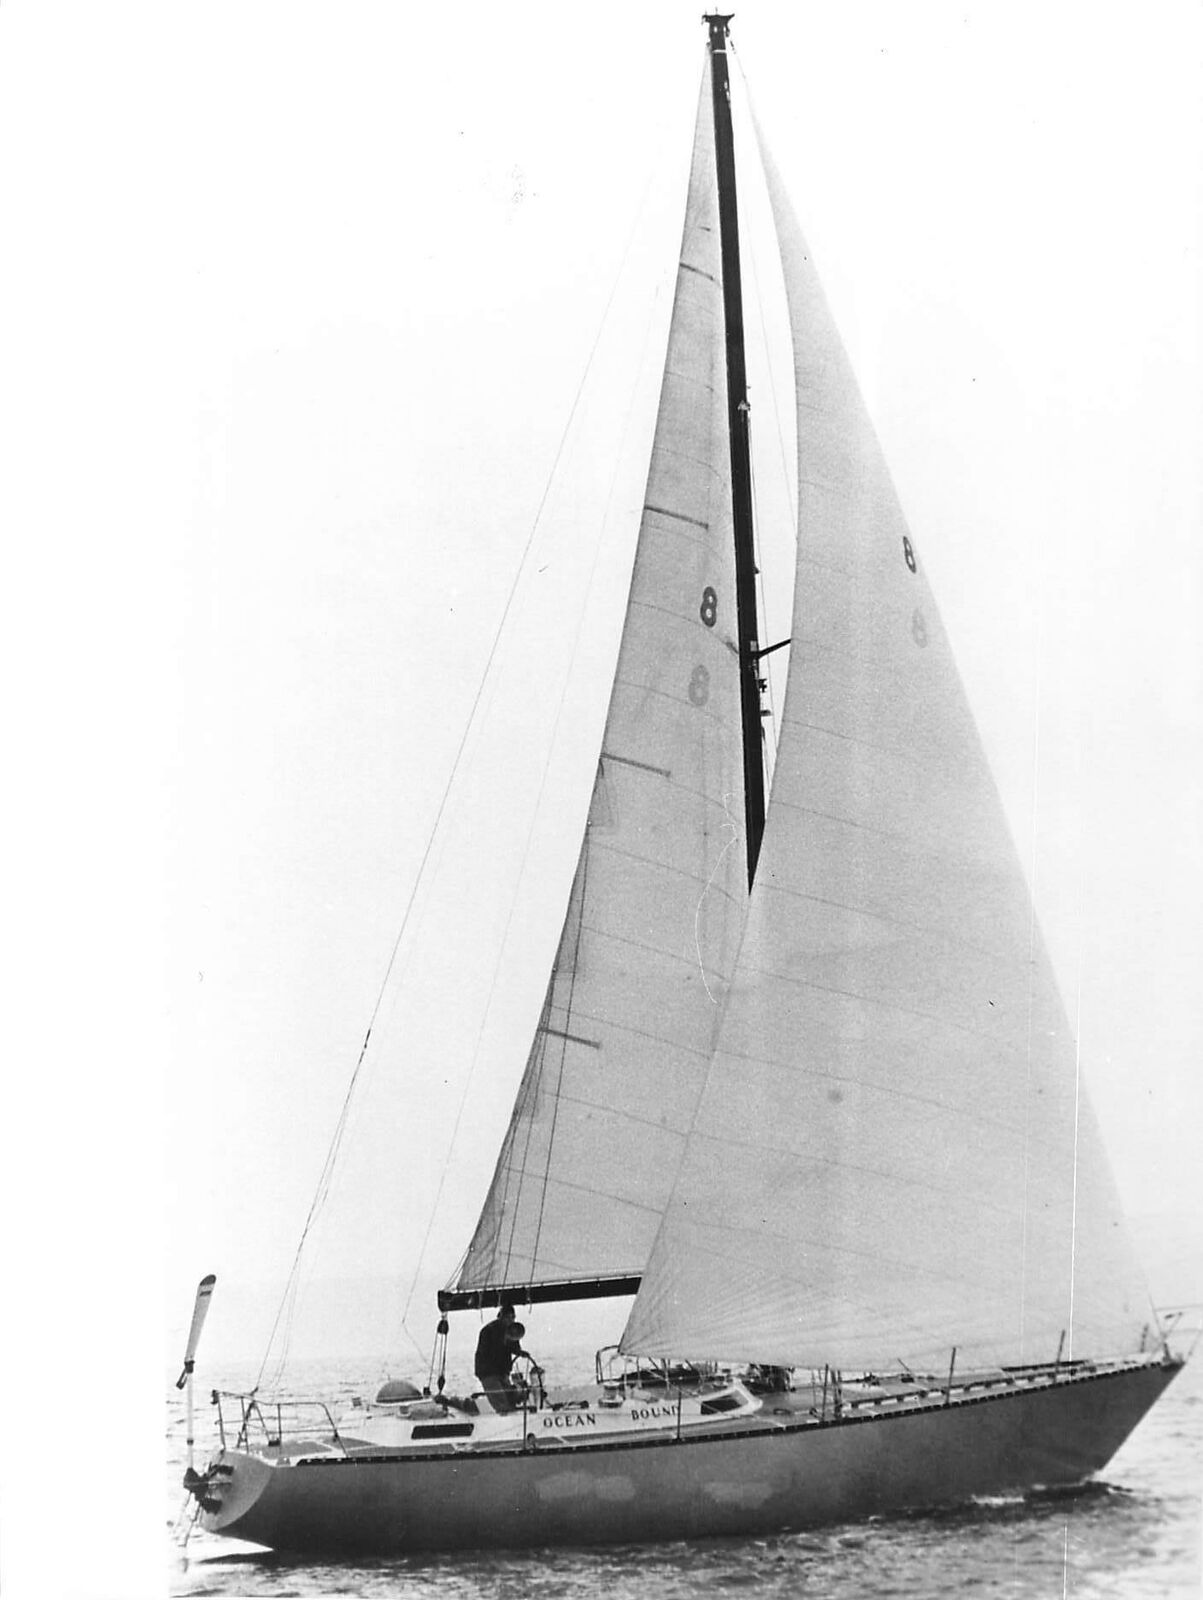 1980 Press Photo New Record At Sea David Scott Cowper Ocean Bound boat sailing